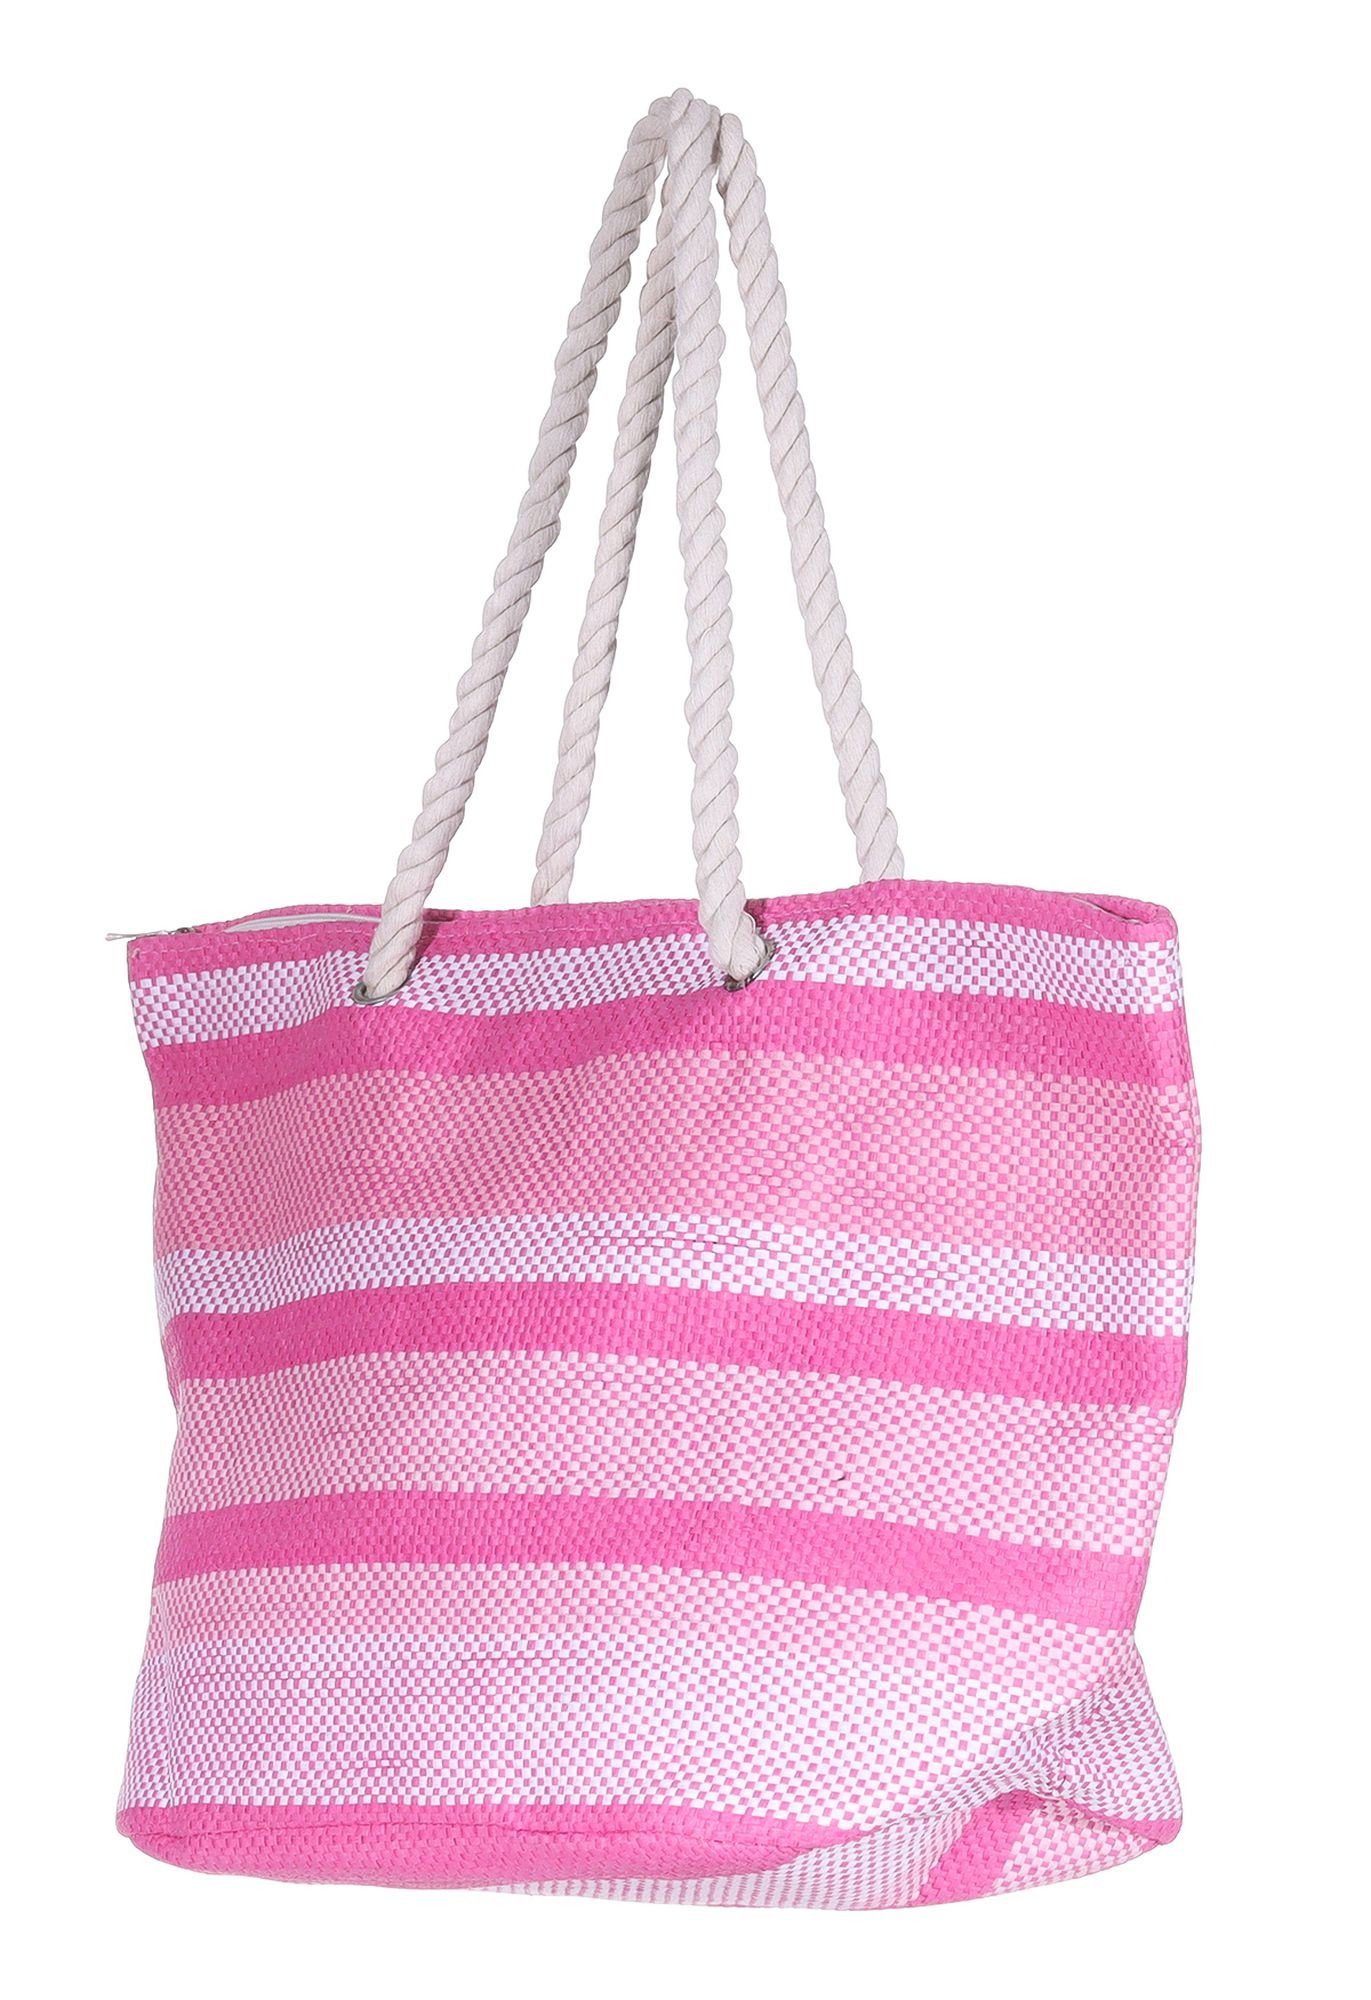 Rosa Markenwarenshop-Style gestreift Weiß Pink Tasche Strandtasche - Silkroda Badetasche Shopper